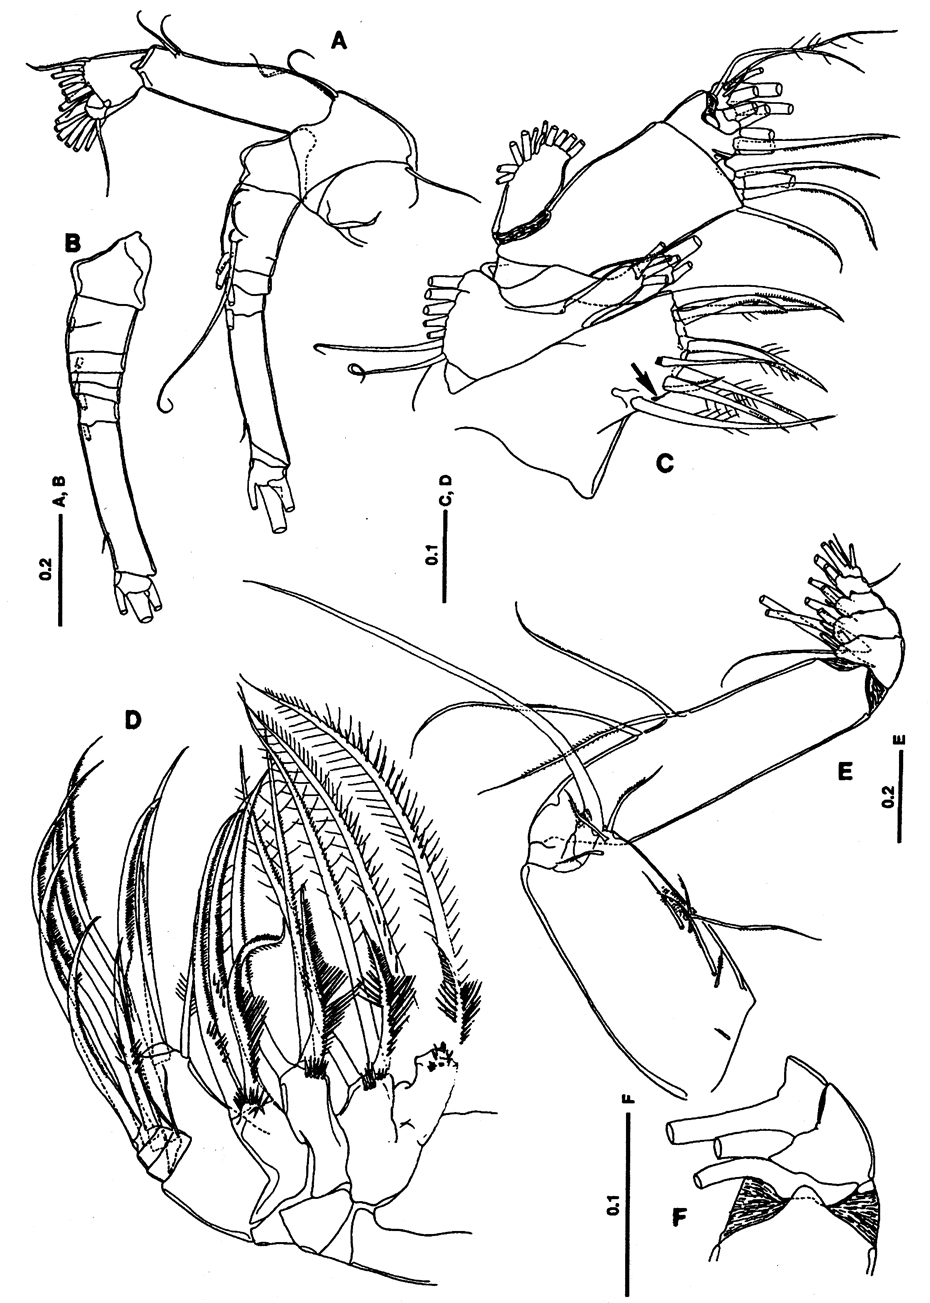 Espèce Lutamator paradiseus - Planche 2 de figures morphologiques